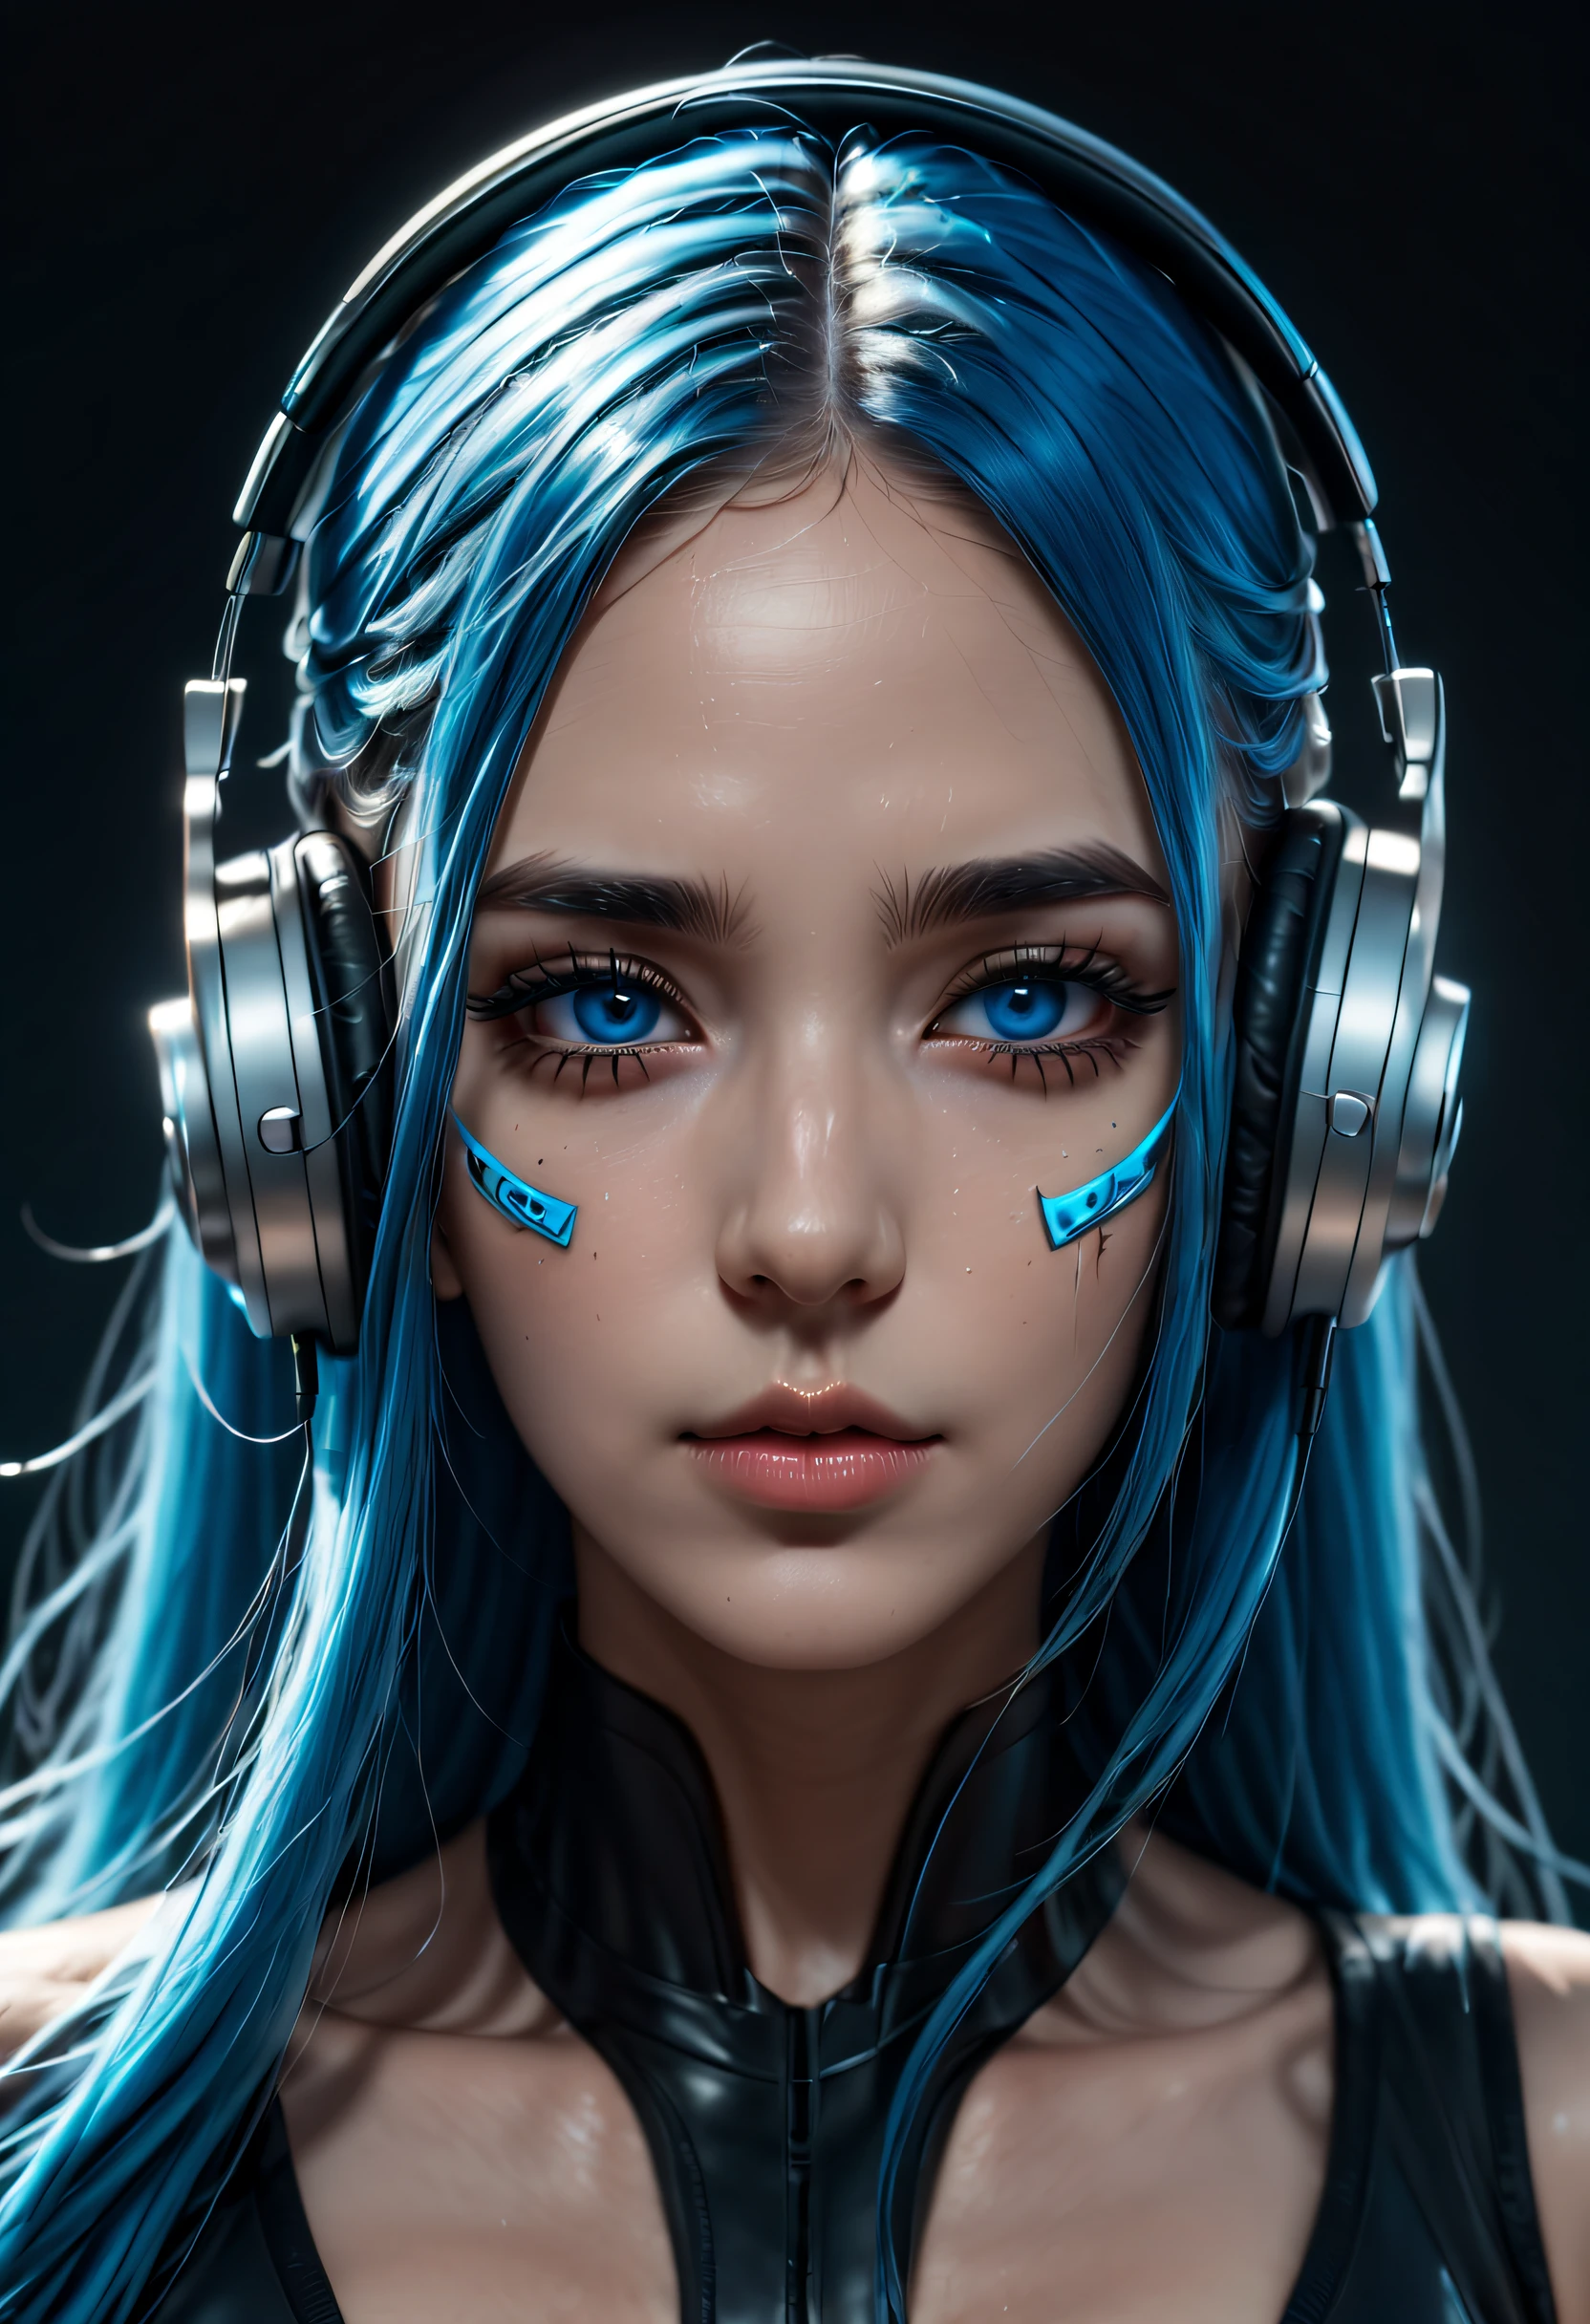 藍色長髮的女孩, 藍眼睛, 未來感, 口罩戴在嘴上, 耳機, 8K, 高品質, 簡單的背景, 發光的眼睛, 漂亮的姿勢